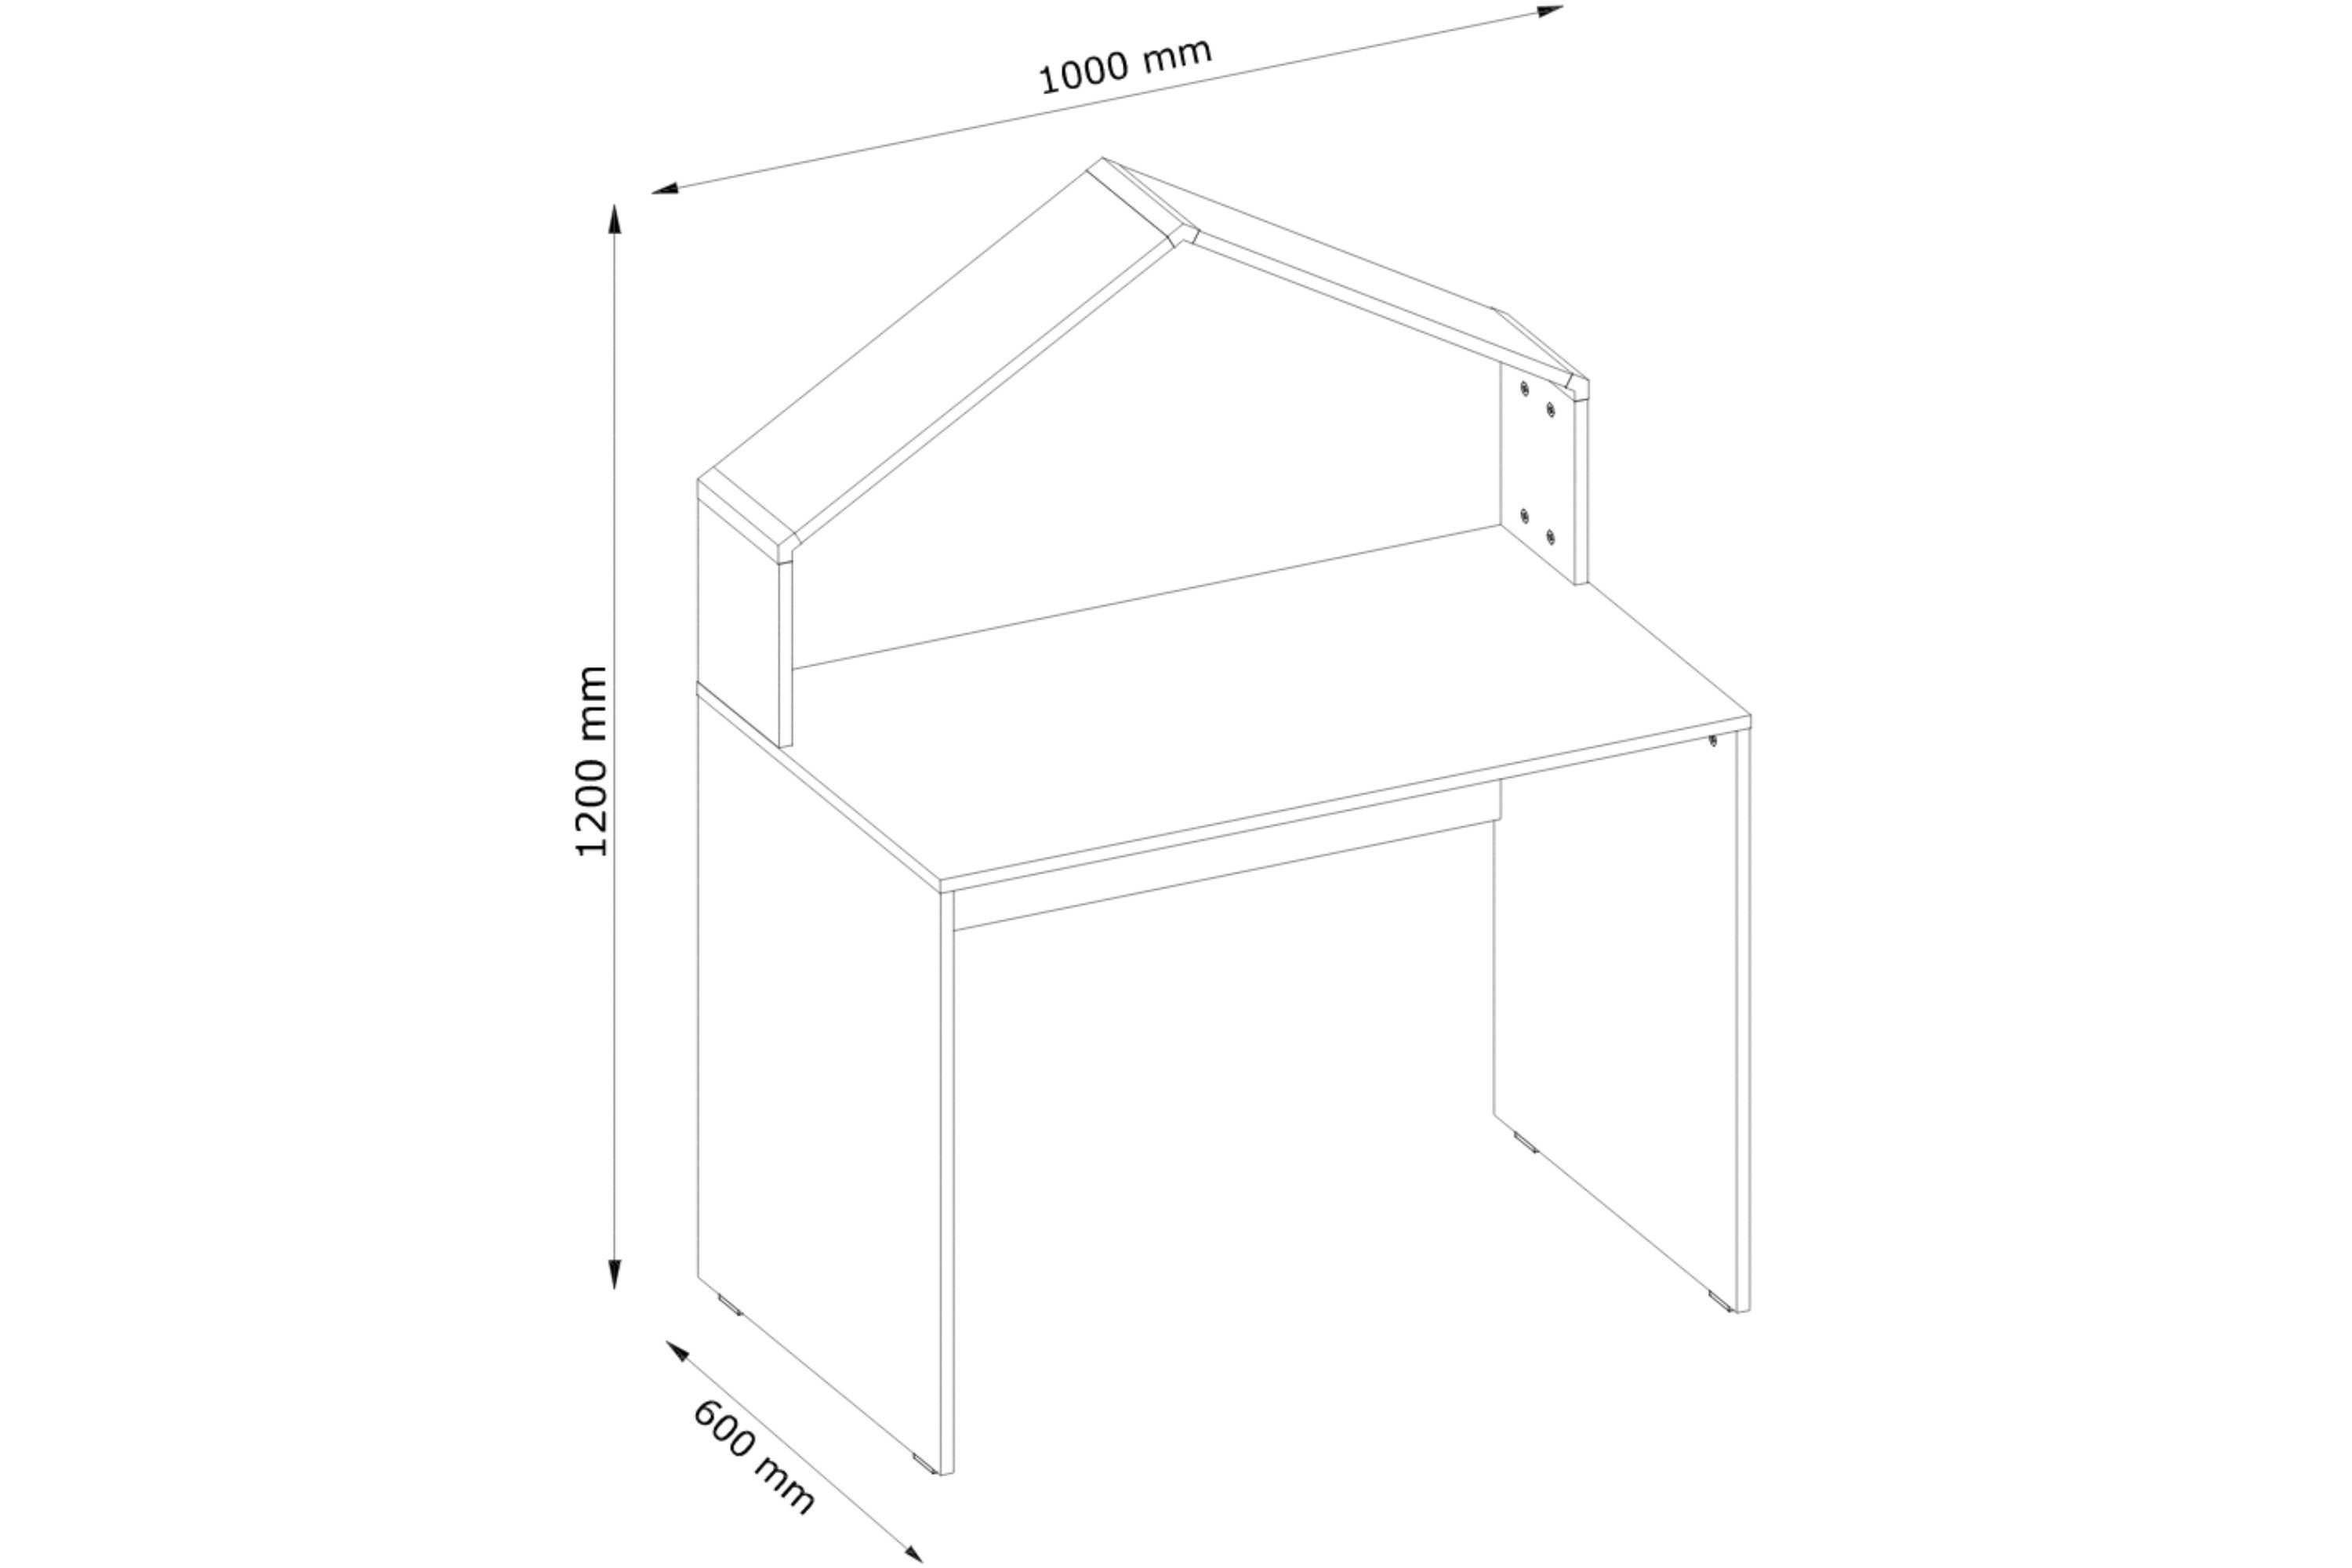 Tischplatte verstärkte Computertisch, Hausstil stabiler Rahmen Kinderschreibtisch Schreibtisch mm, Kinderschreibtisch Konstruktion, 16 MIRUM im Konsimo